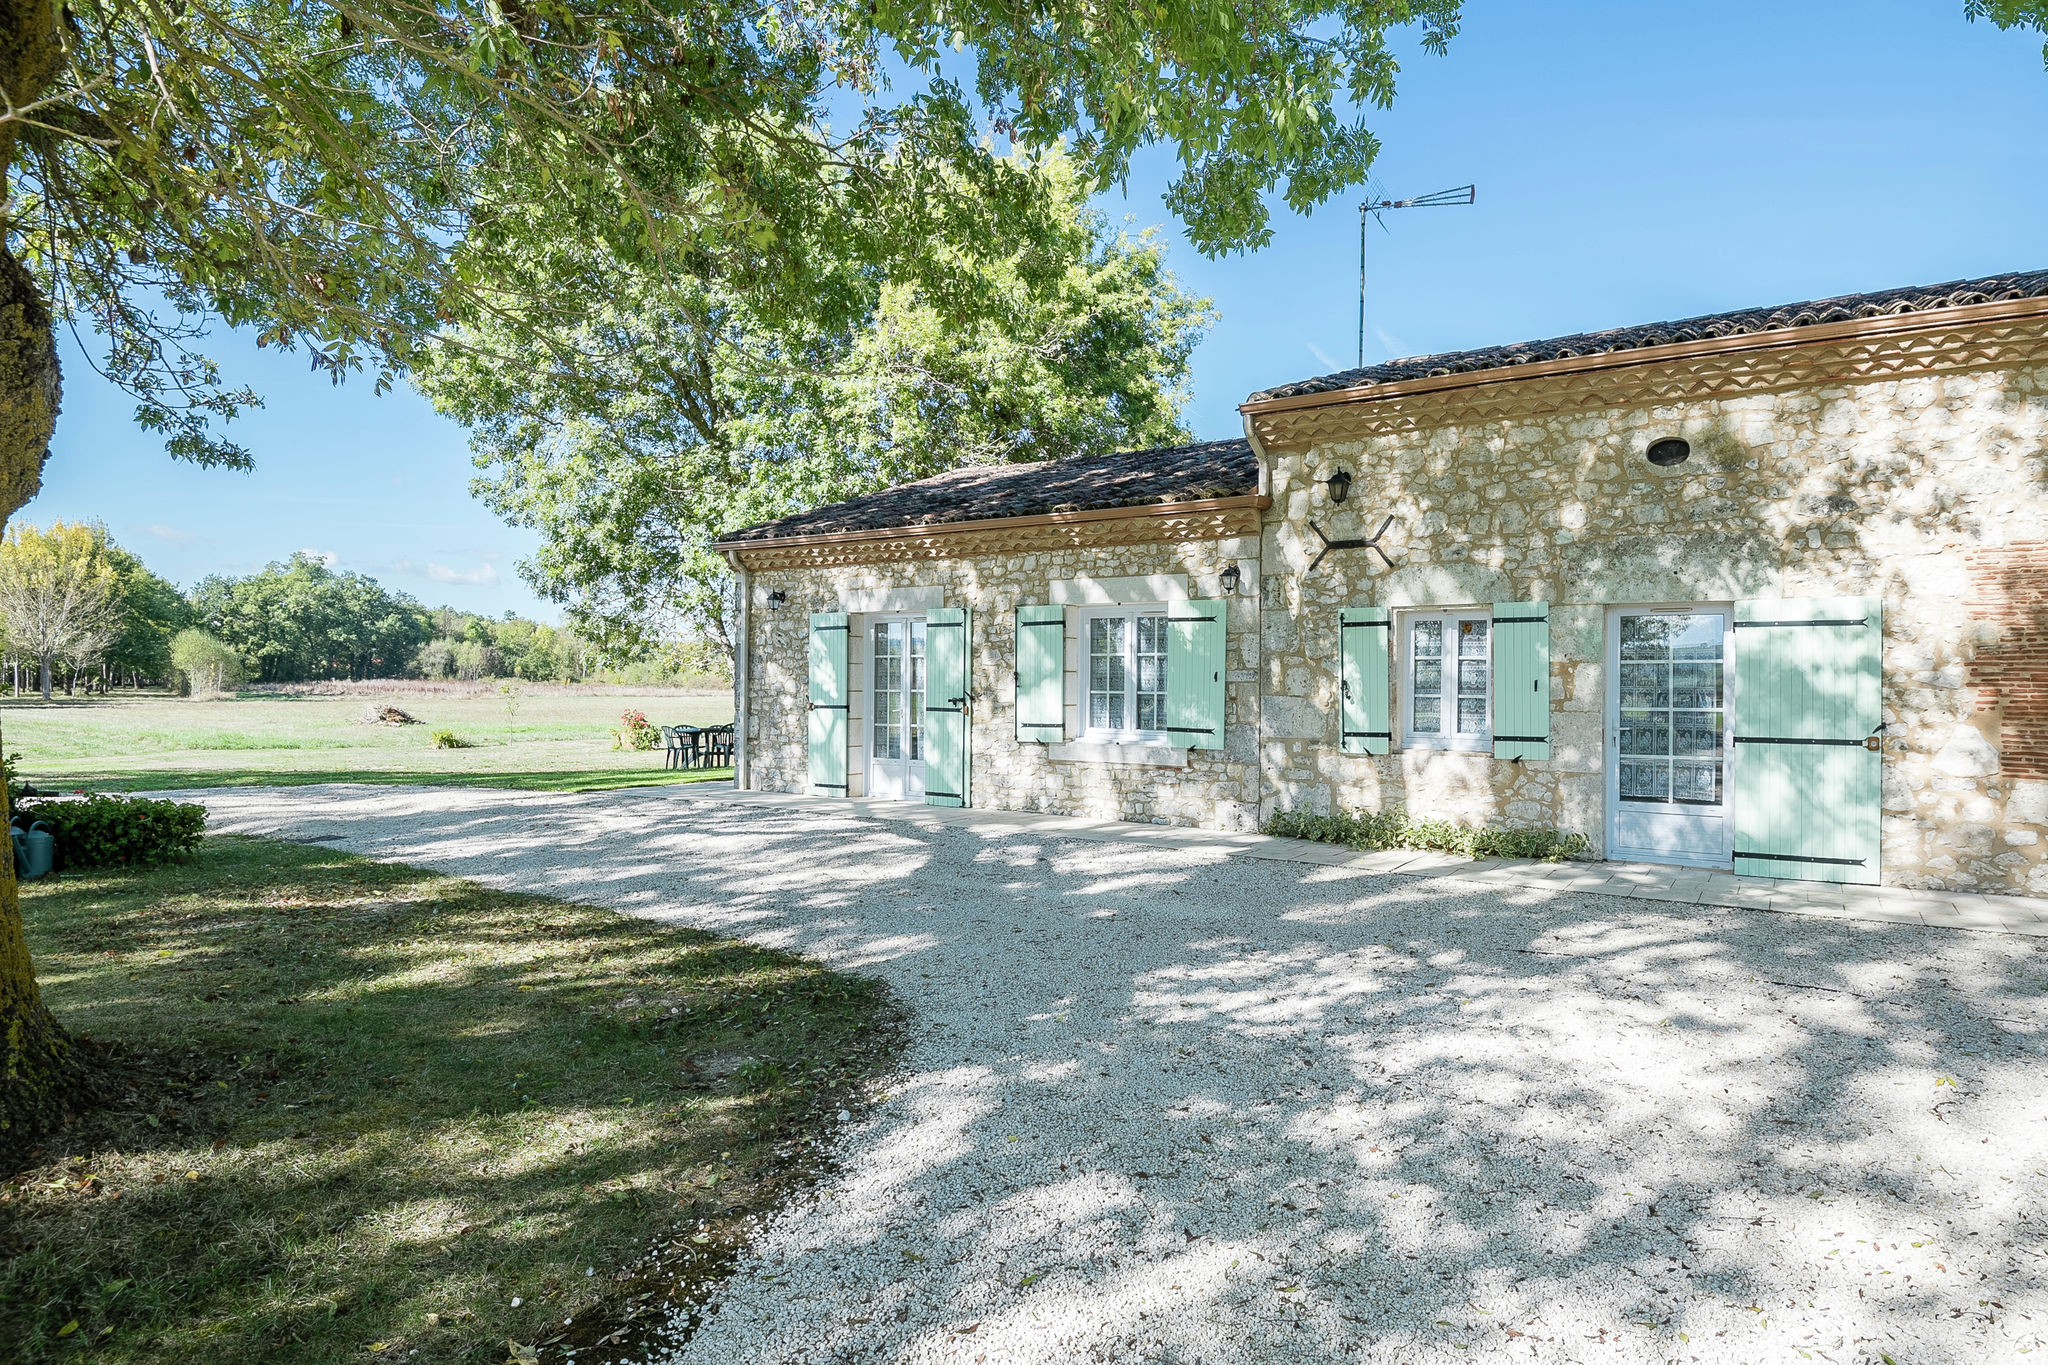 Mooi huis op landelijke locatie bij Bergerac (8 km), nabij unieke plekjes